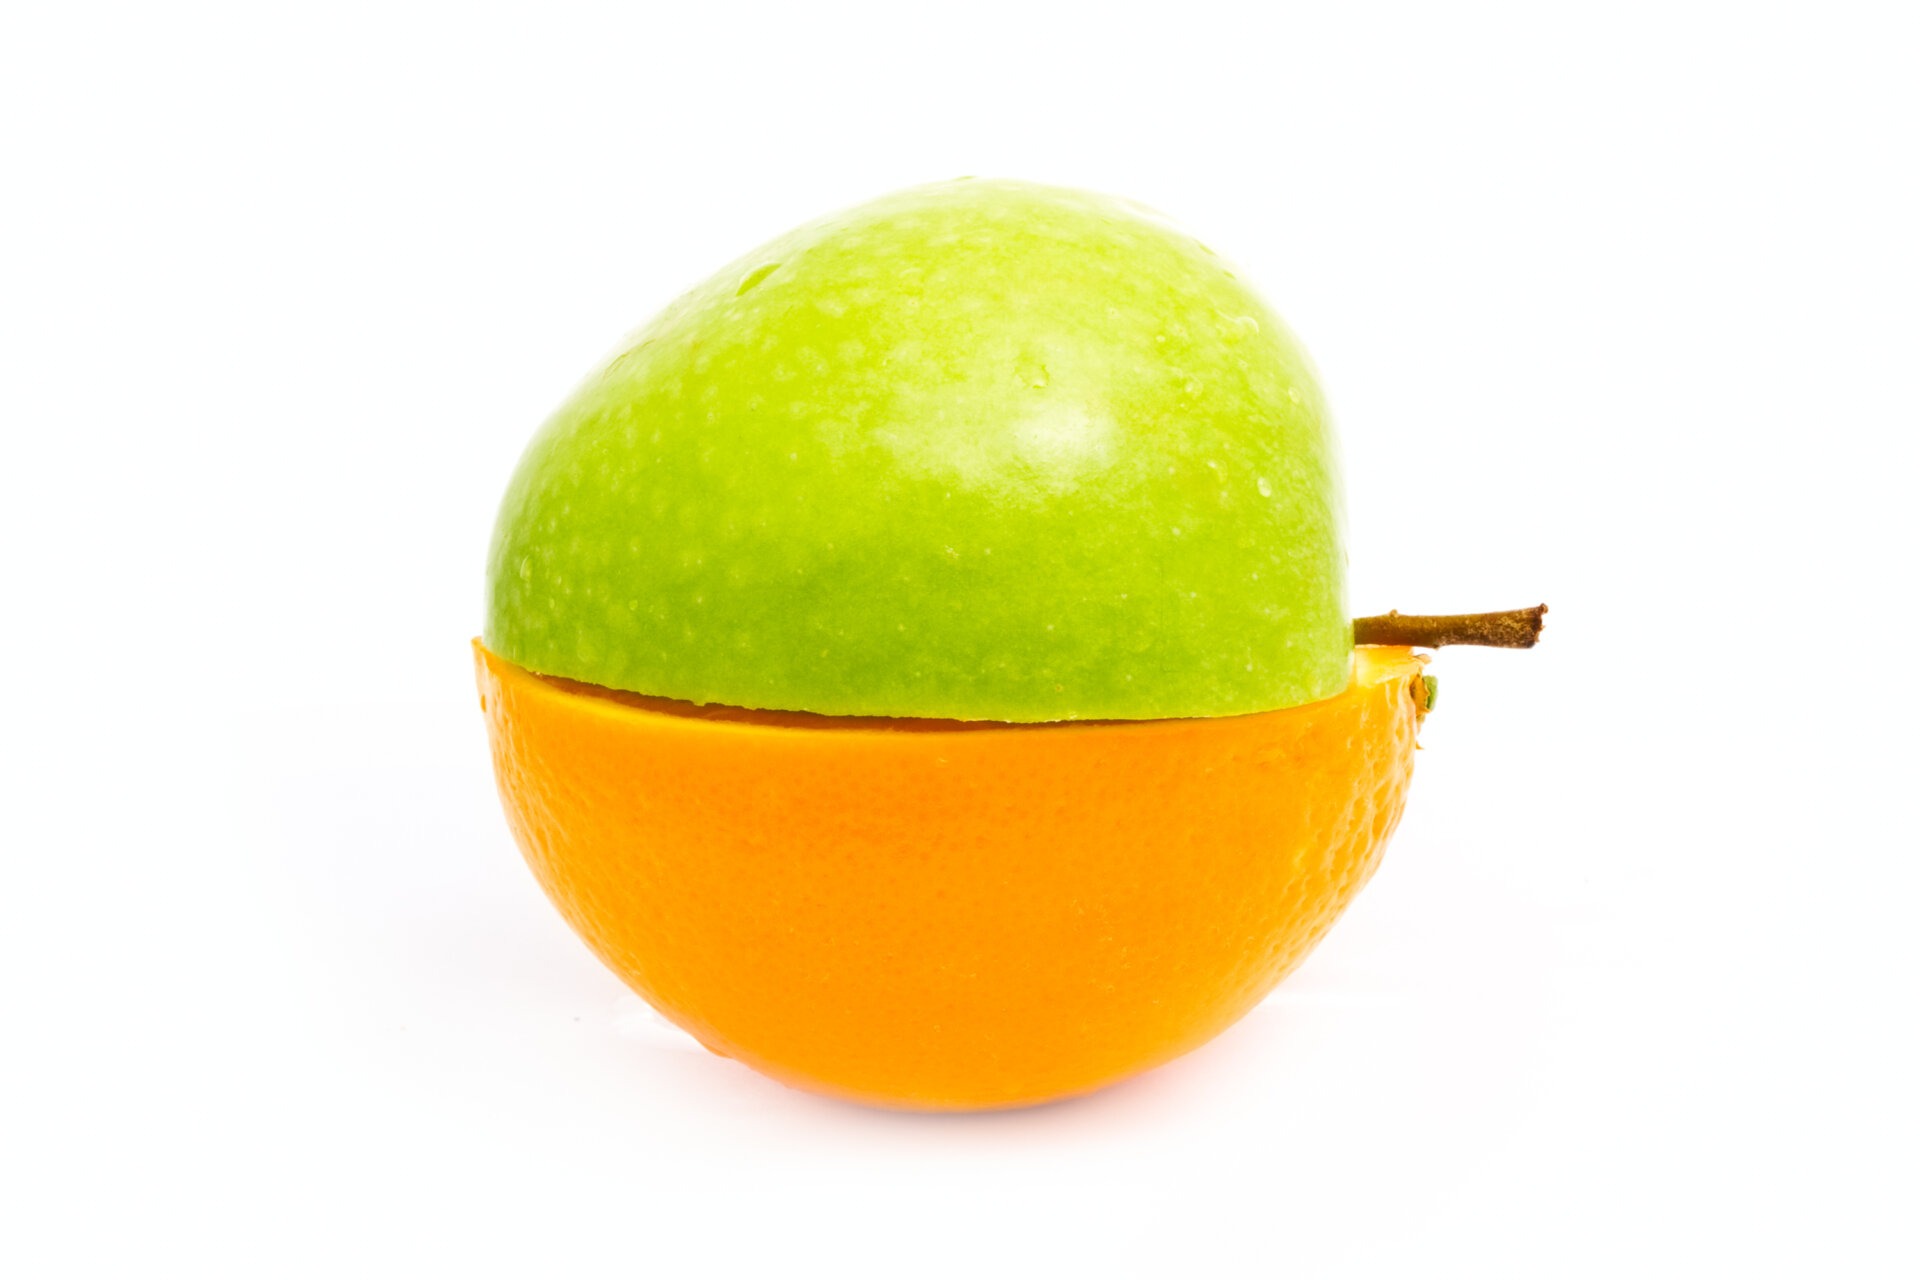 Μισό πράσινο μήλο, το οποίο εφάπτεται από την εσωτερική, κομμένη του πλευρά, με ένα μισό πορτοκάλι.